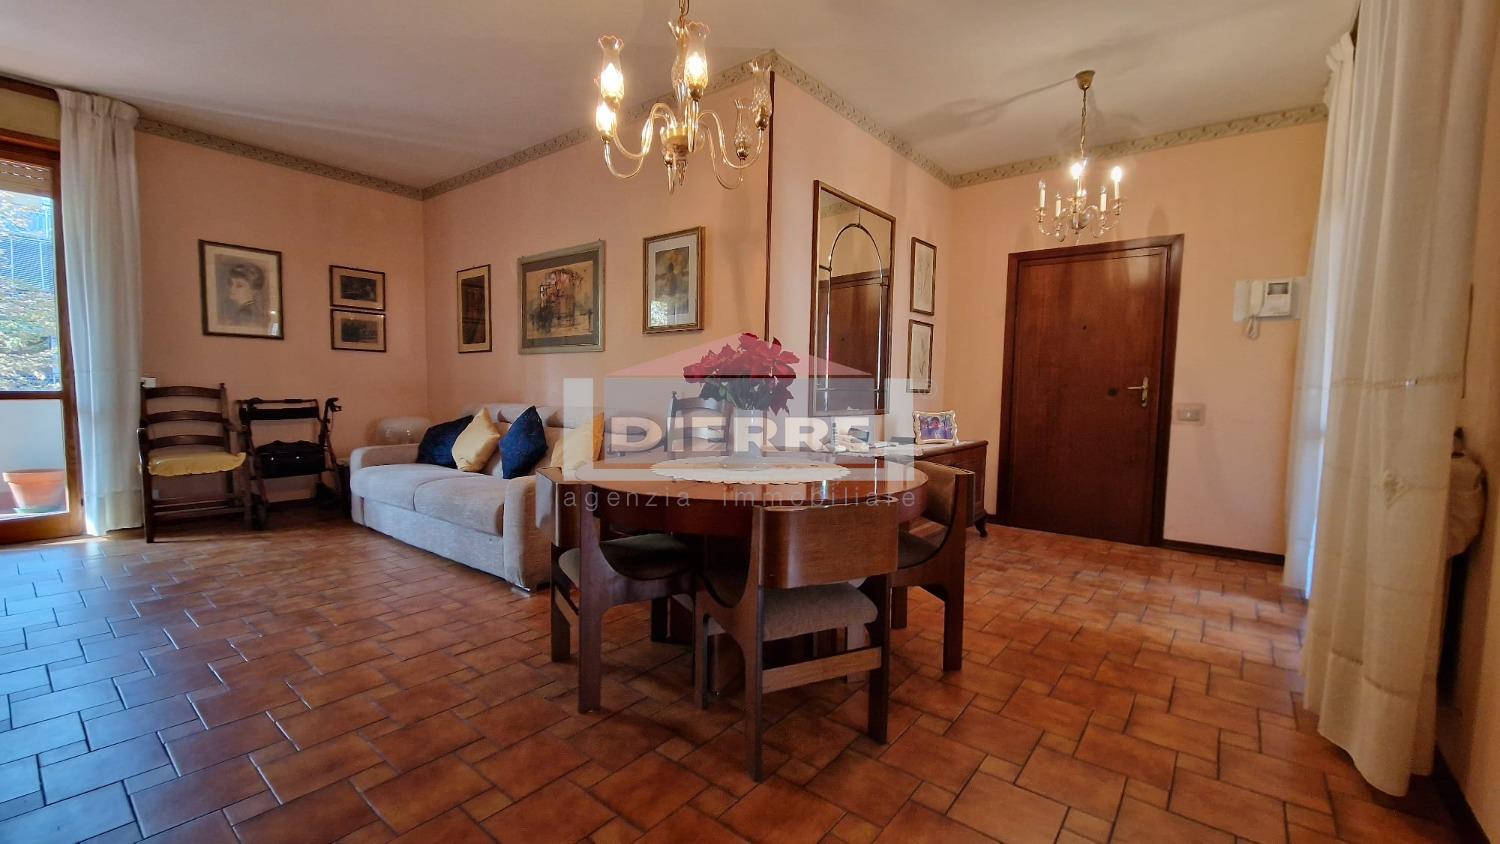 Appartamento in vendita a Carpi, 4 locali, prezzo € 220.000 | PortaleAgenzieImmobiliari.it